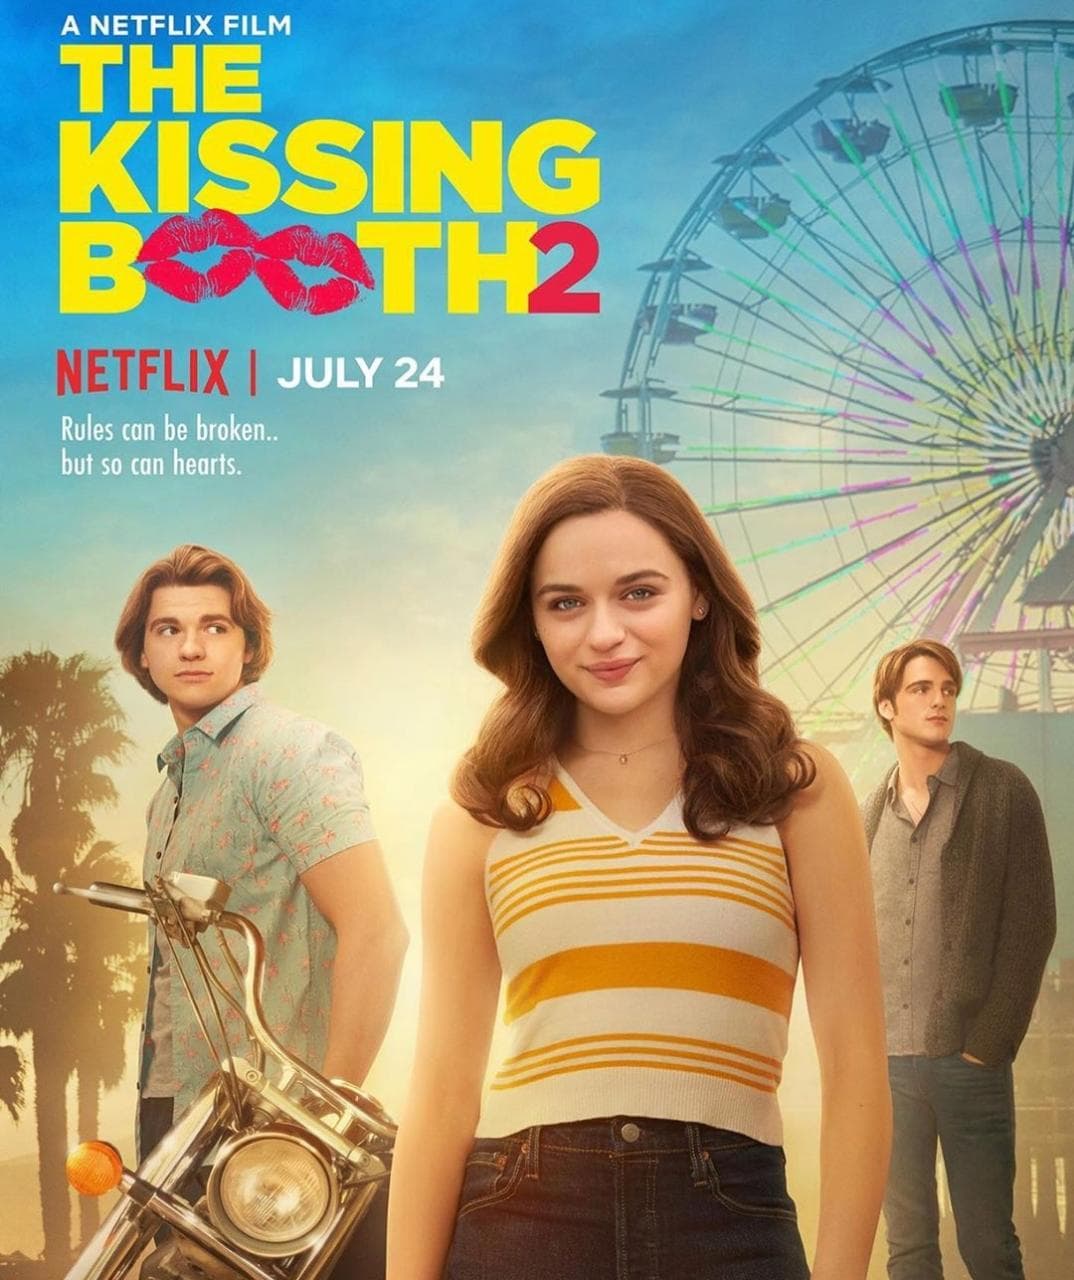 Netflix revela fecha de estreno de "The Kissing Booth 2"